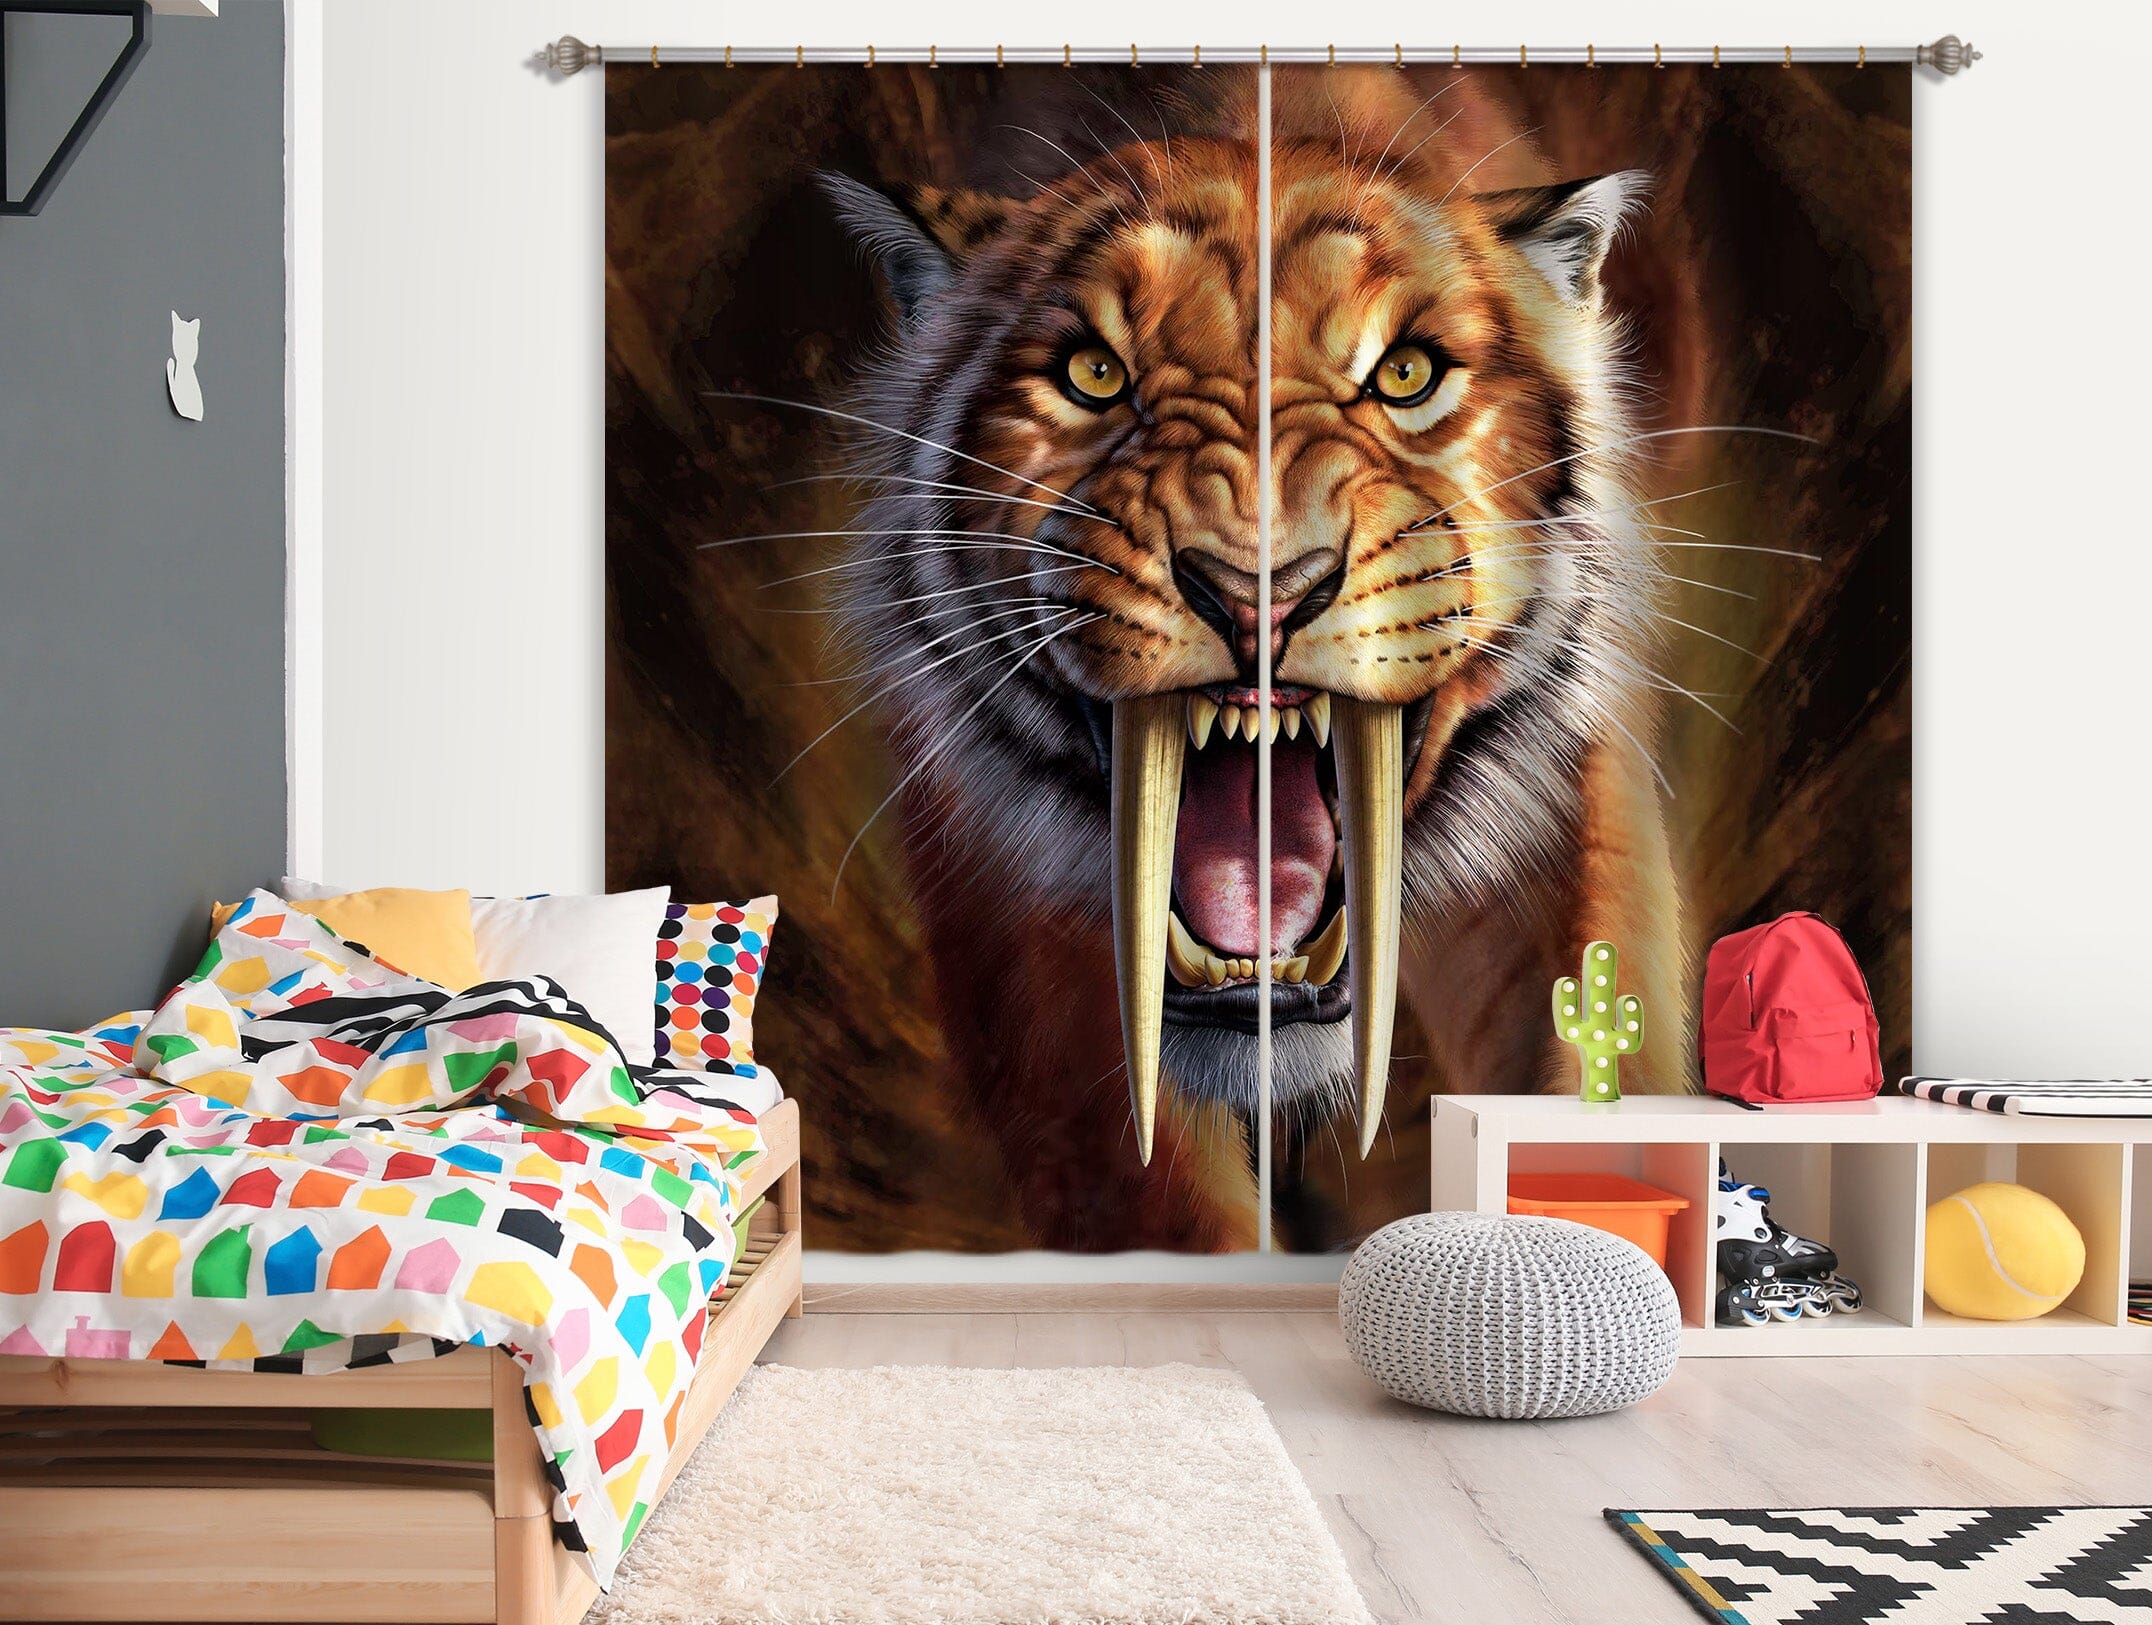 3D Tiger Teeth 073 Jerry LoFaro Curtain Curtains Drapes Curtains AJ Creativity Home 